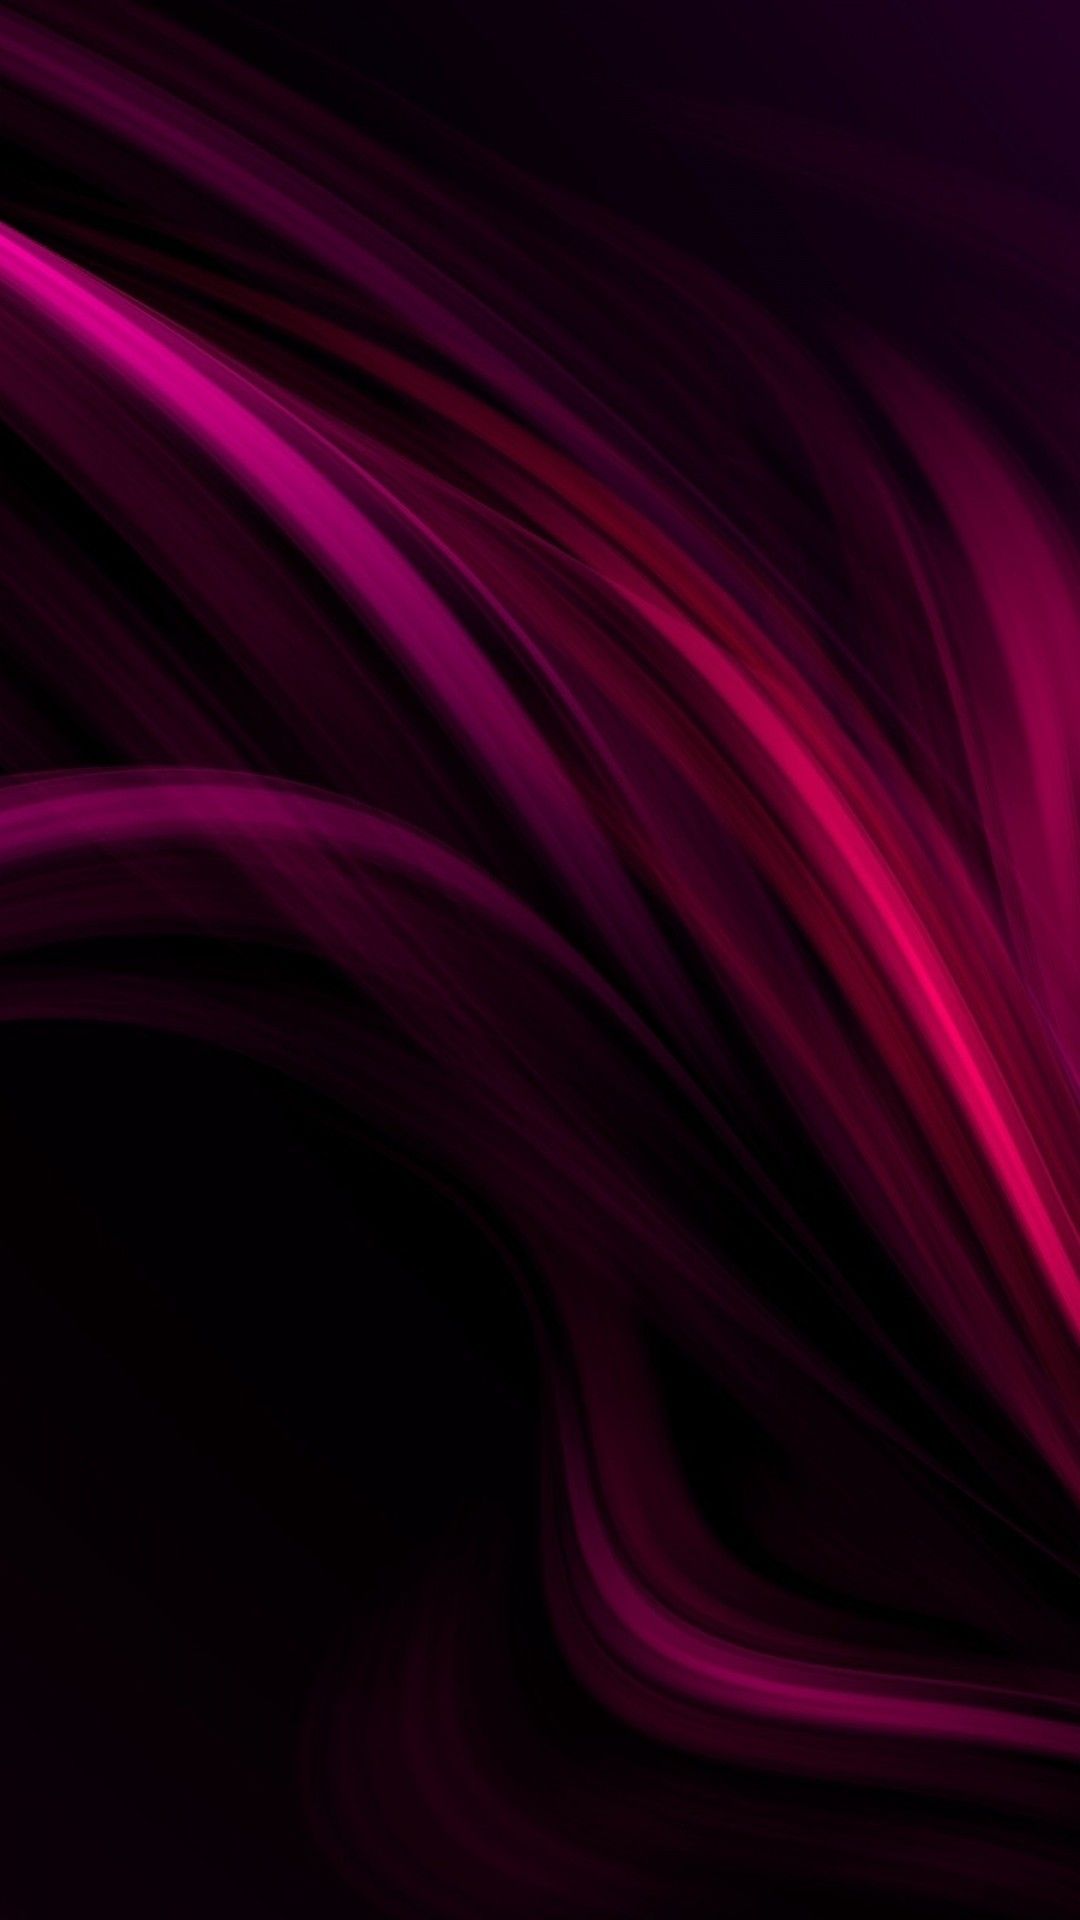 1080x1920 Wallpaper line, shadow, background, dark. Pink wallpaper iphone, Black and purple wallpaper, iPhone background